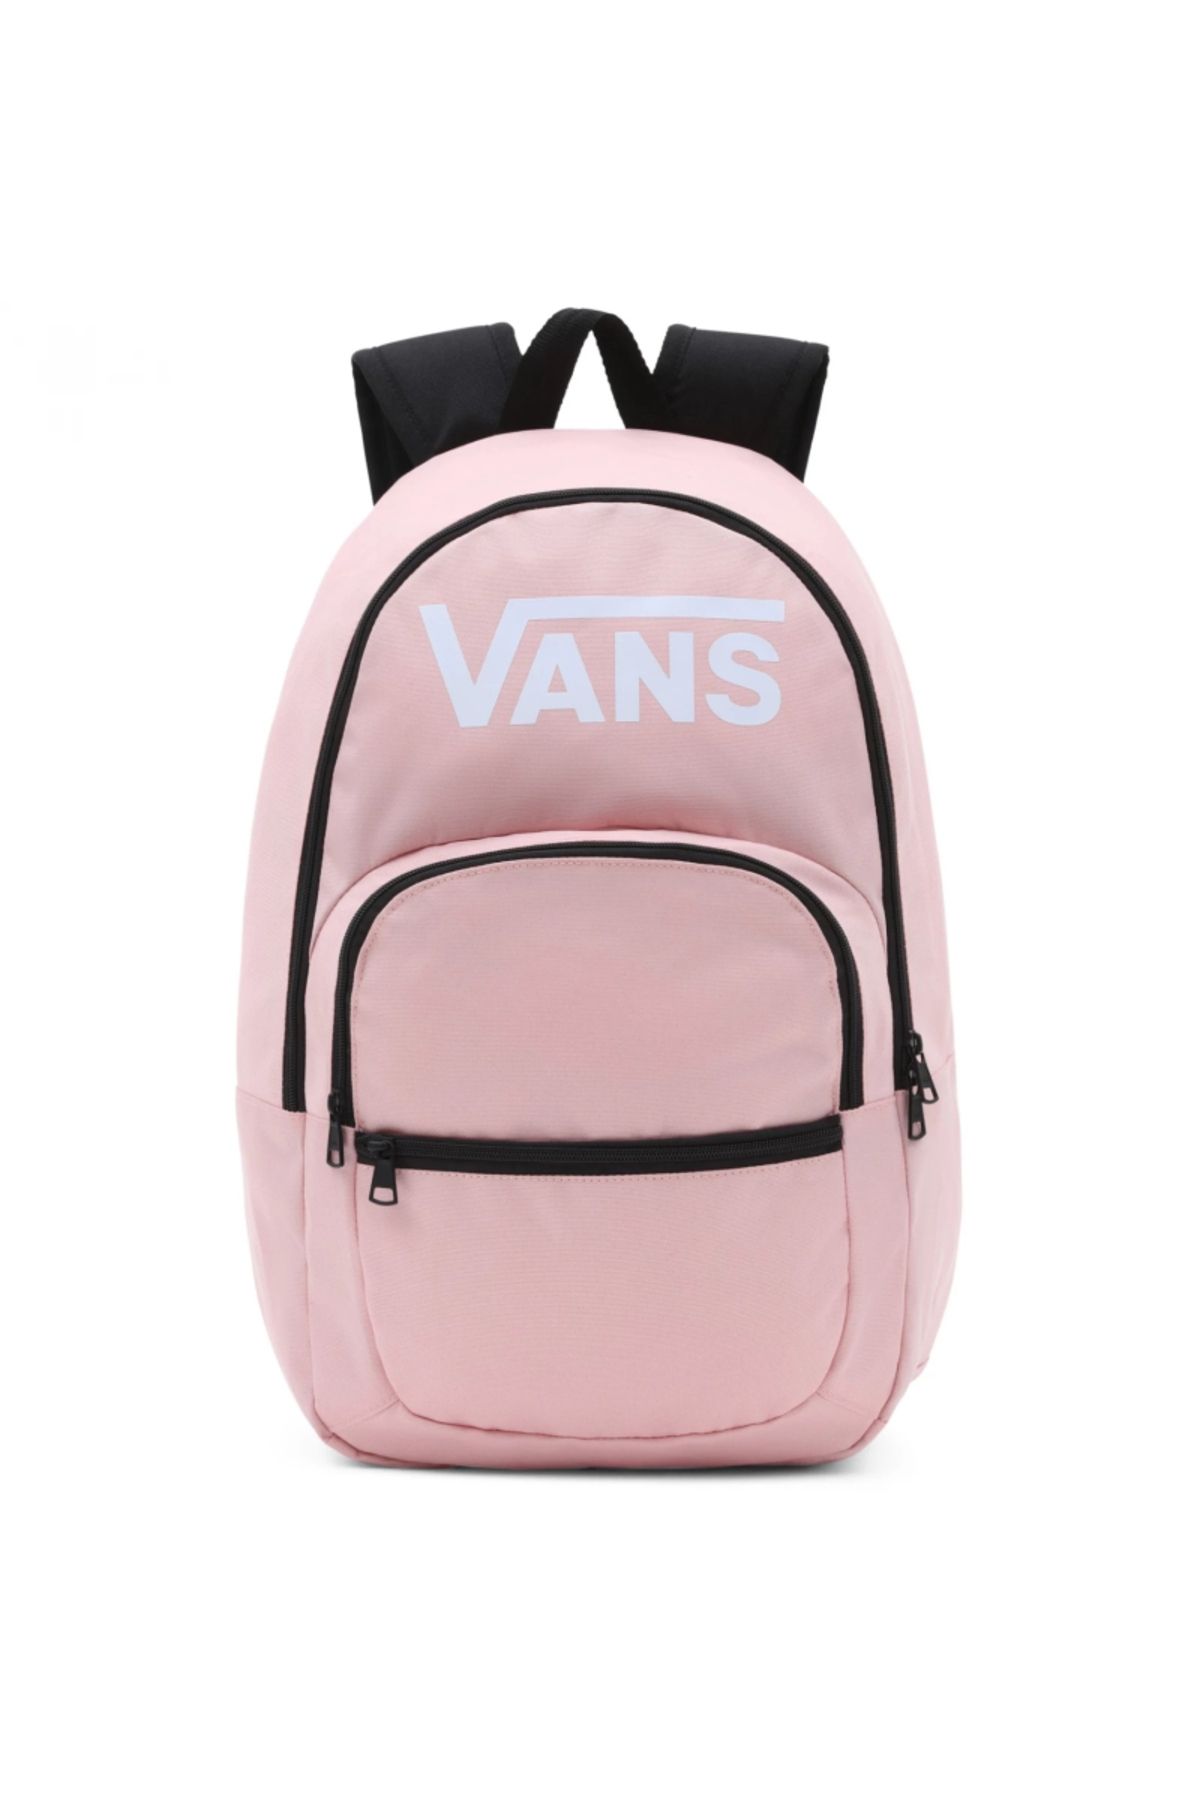 Vans Ranged 2 Backpack-B Kadın Sırt Çantası